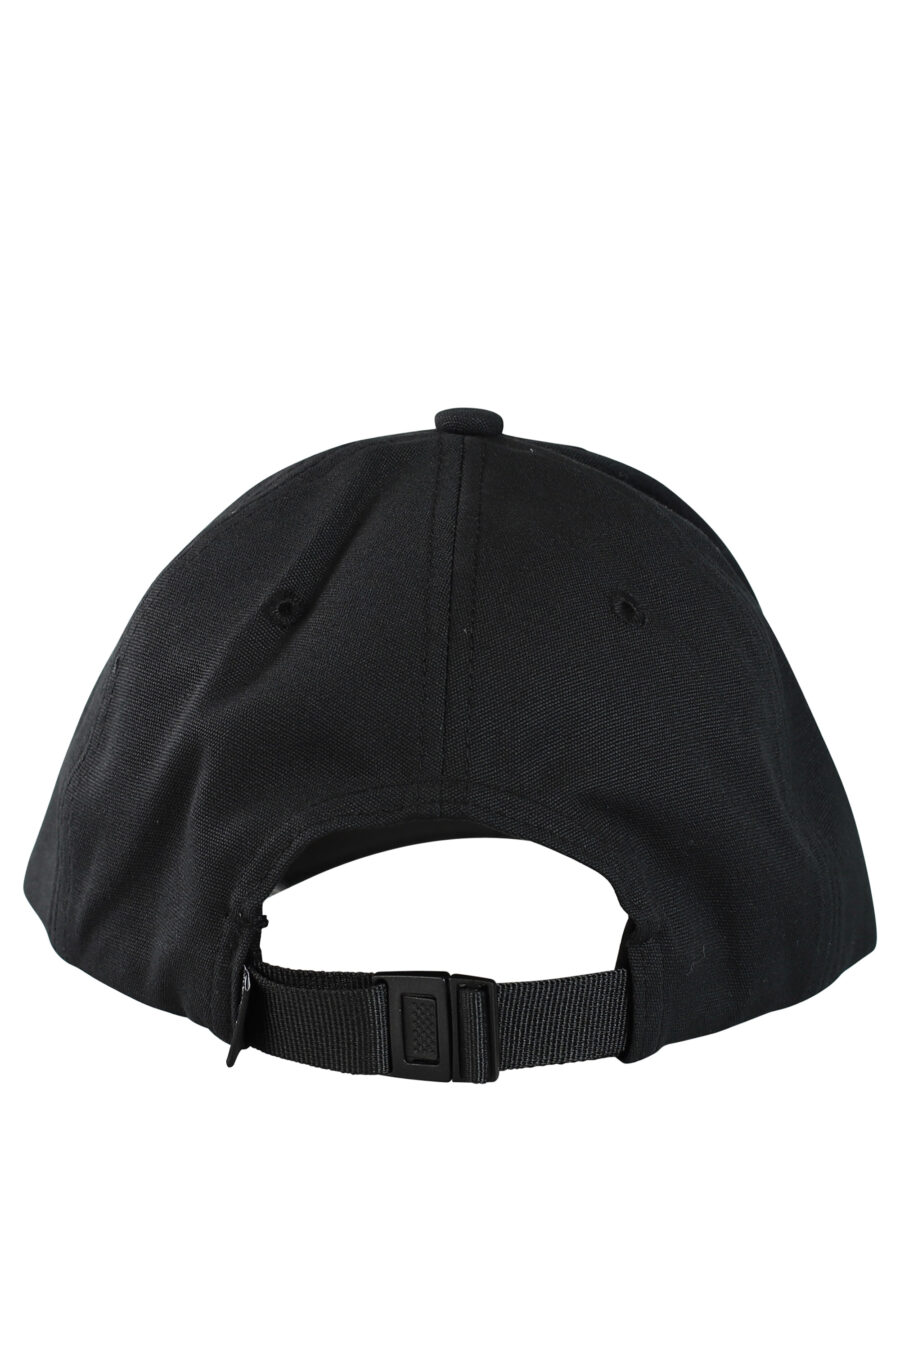 Gorra negra con logo circular - Photos 532